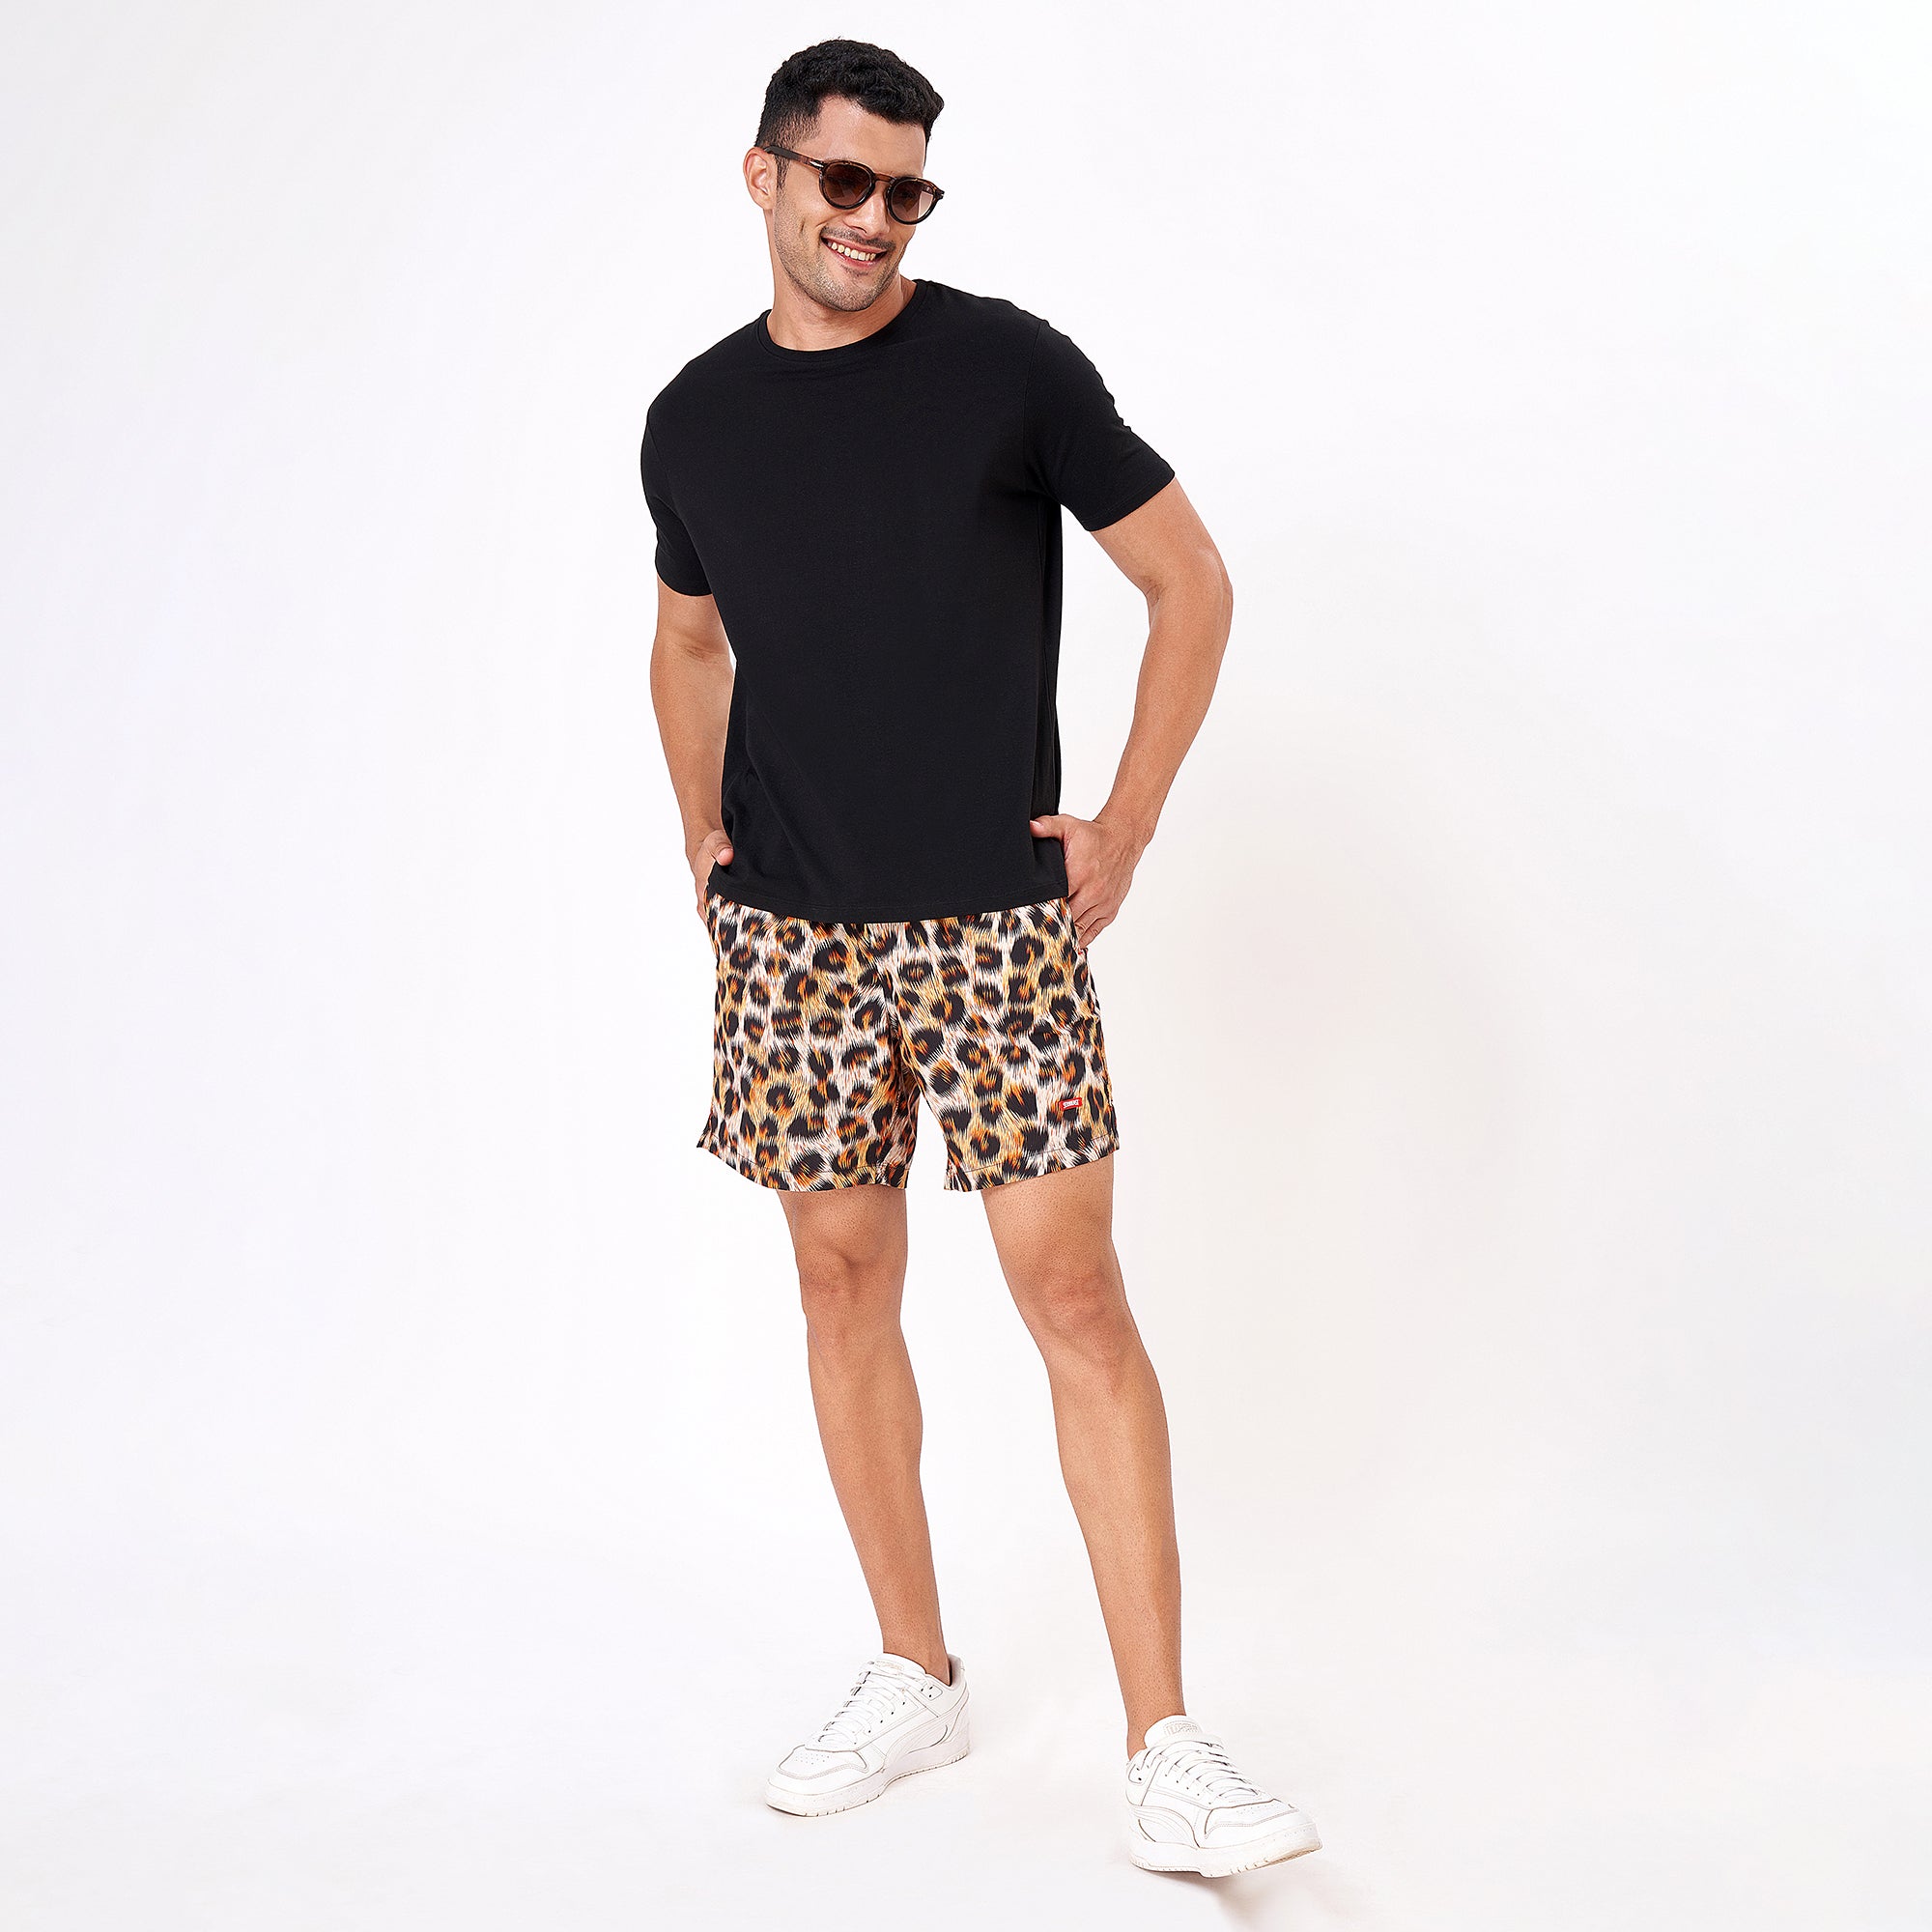 Cheetah Skin Boxer Shorts For Men